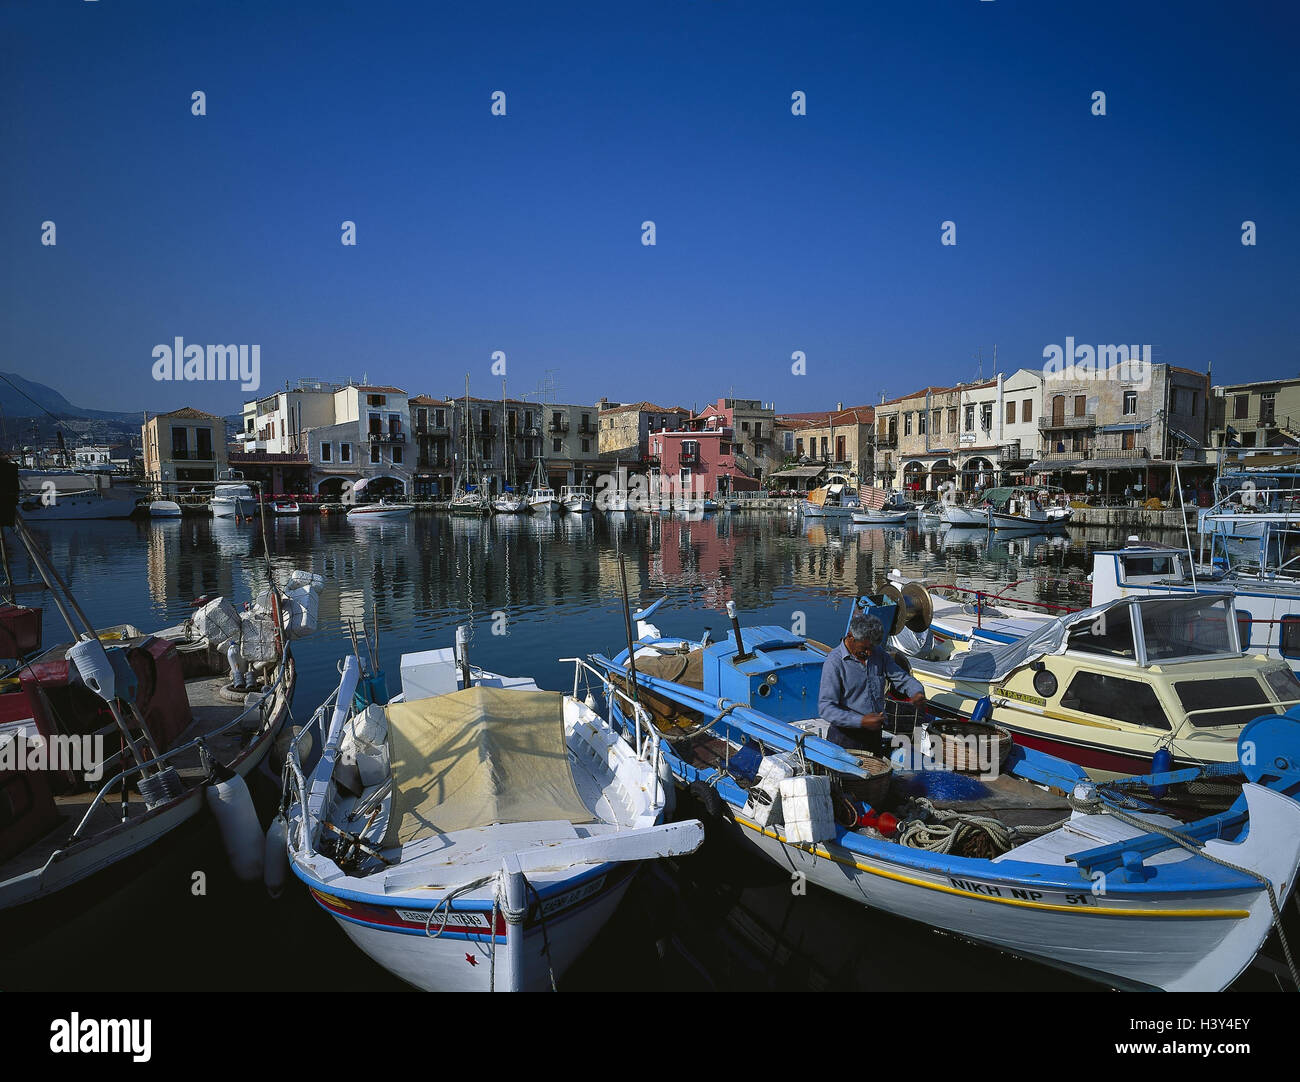 Griechenland, Kreta, Rethymnon, Fischerei Hafen Autor benennen zwingend, Insel, lokale Ansicht, Hafen, Angelboote/Fischerboote Stockfoto